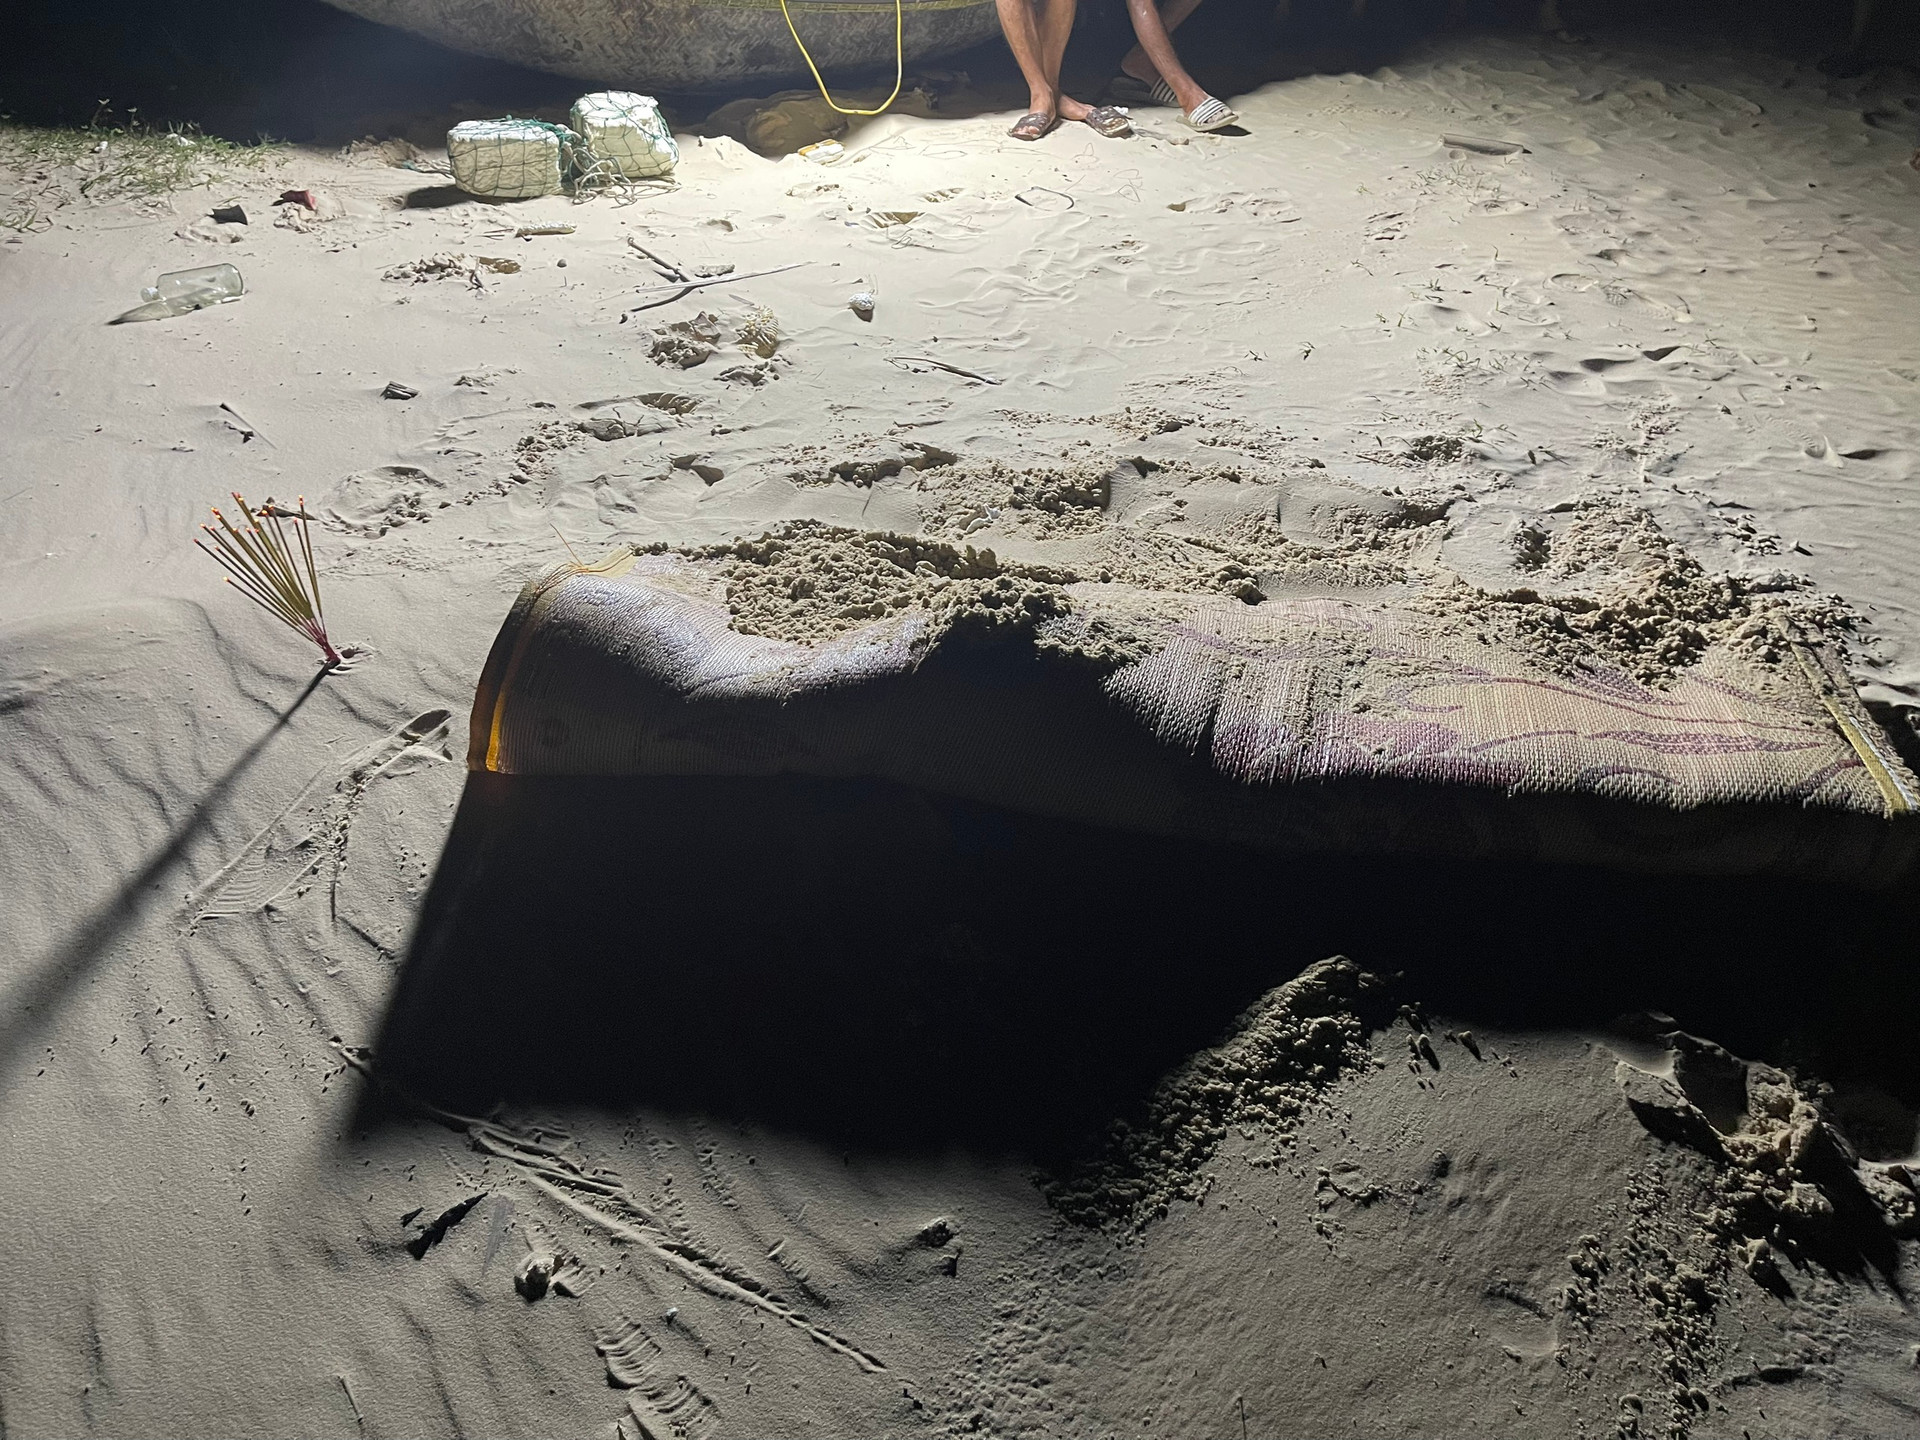 Người dân phát hiện 1 phần thi thể người đang trong quá trình phân hủy tại bờ biển xã Hải An, Hải Lăng. Ảnh: CTV.